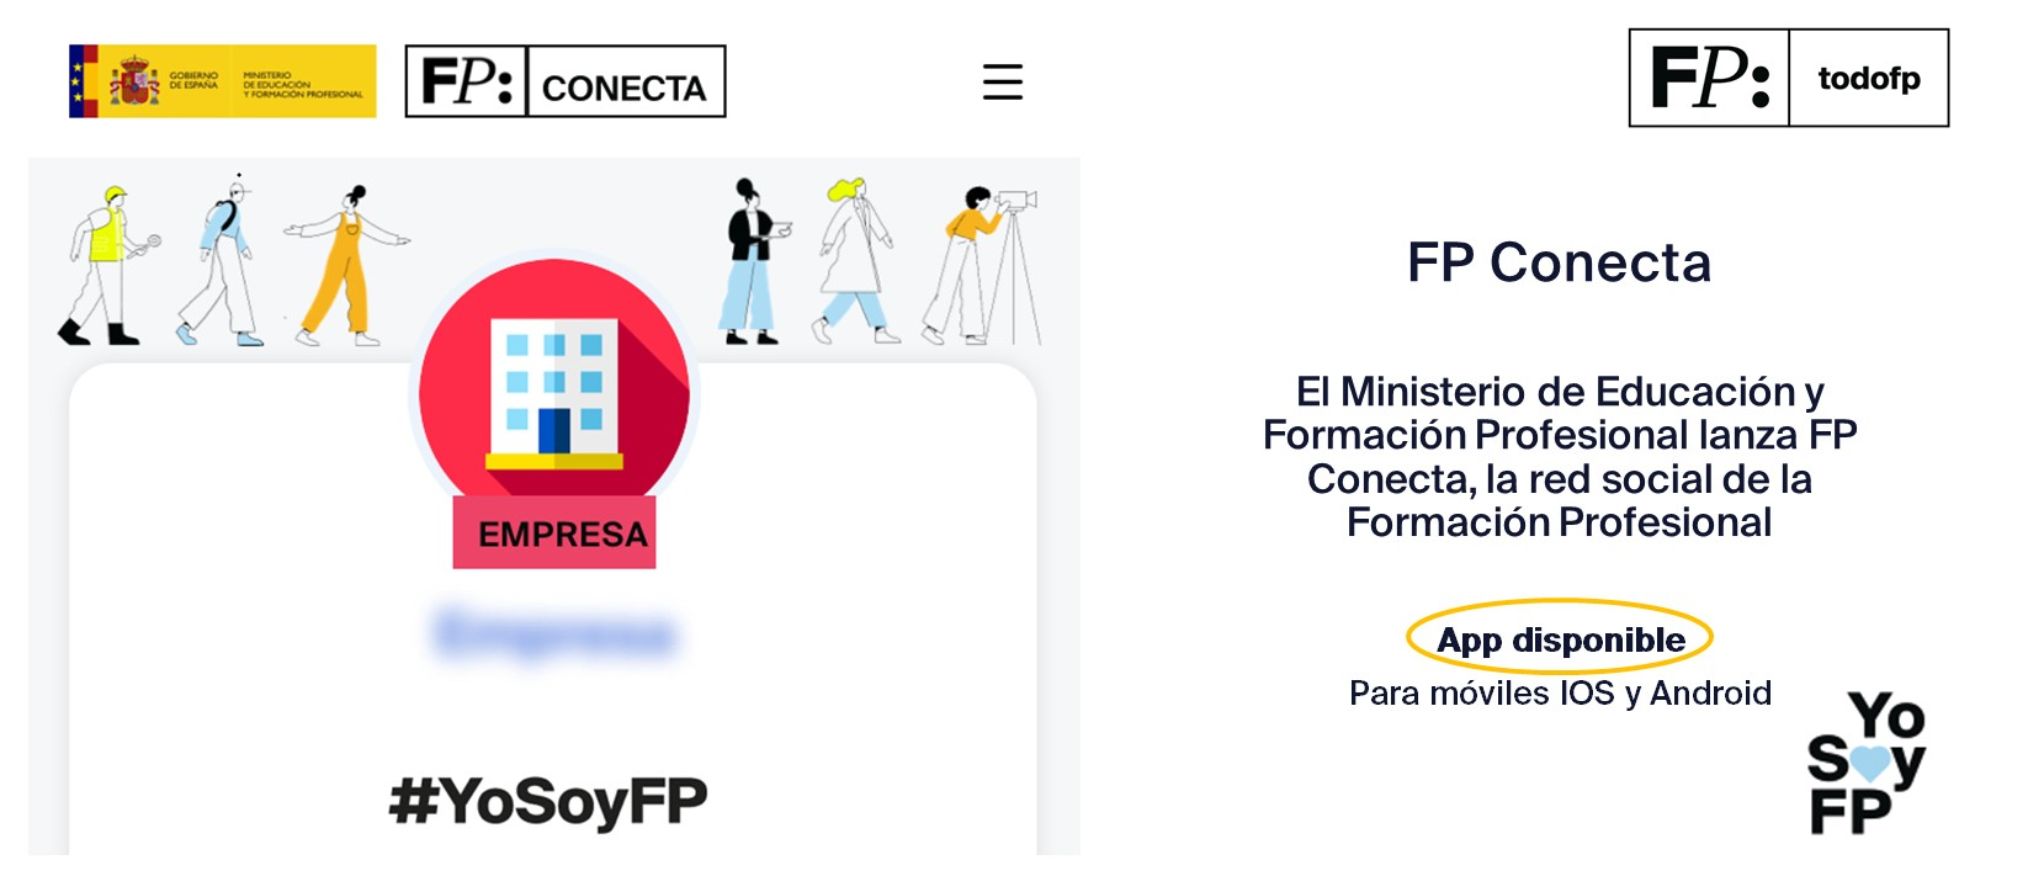 El Ministerio de Educación y Formación Profesional lanza FP Conecta, la red social de la Formación Profesional